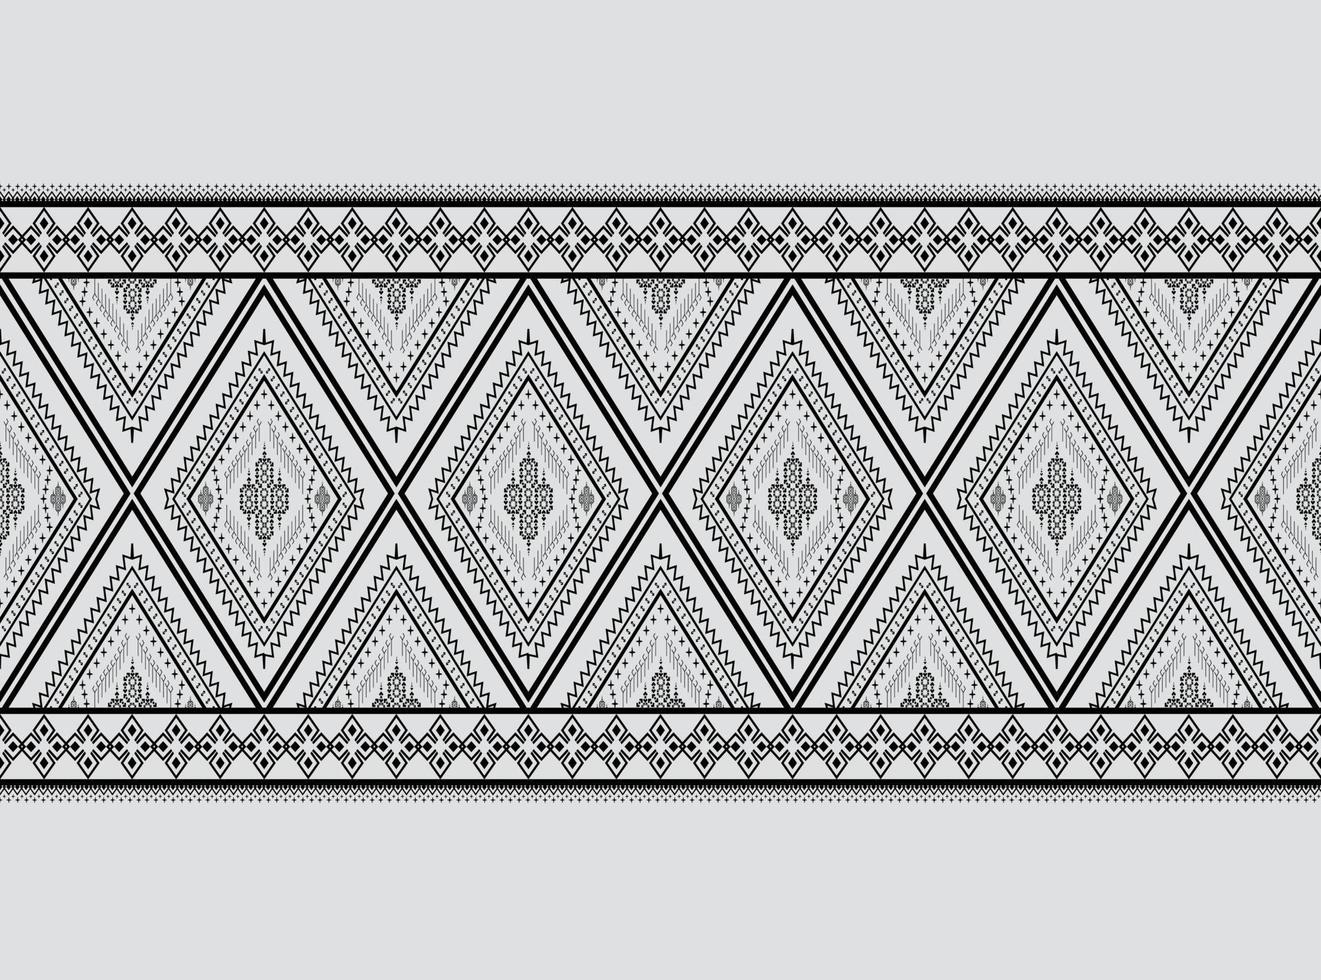 geometriska etniska mönster broderidesign för bakgrund eller tapeter och kläder, kjol, matta, tapeter, kläder, omslag, batik, tyg, kläder, med mörkblå triangel vektor, illustration vektor